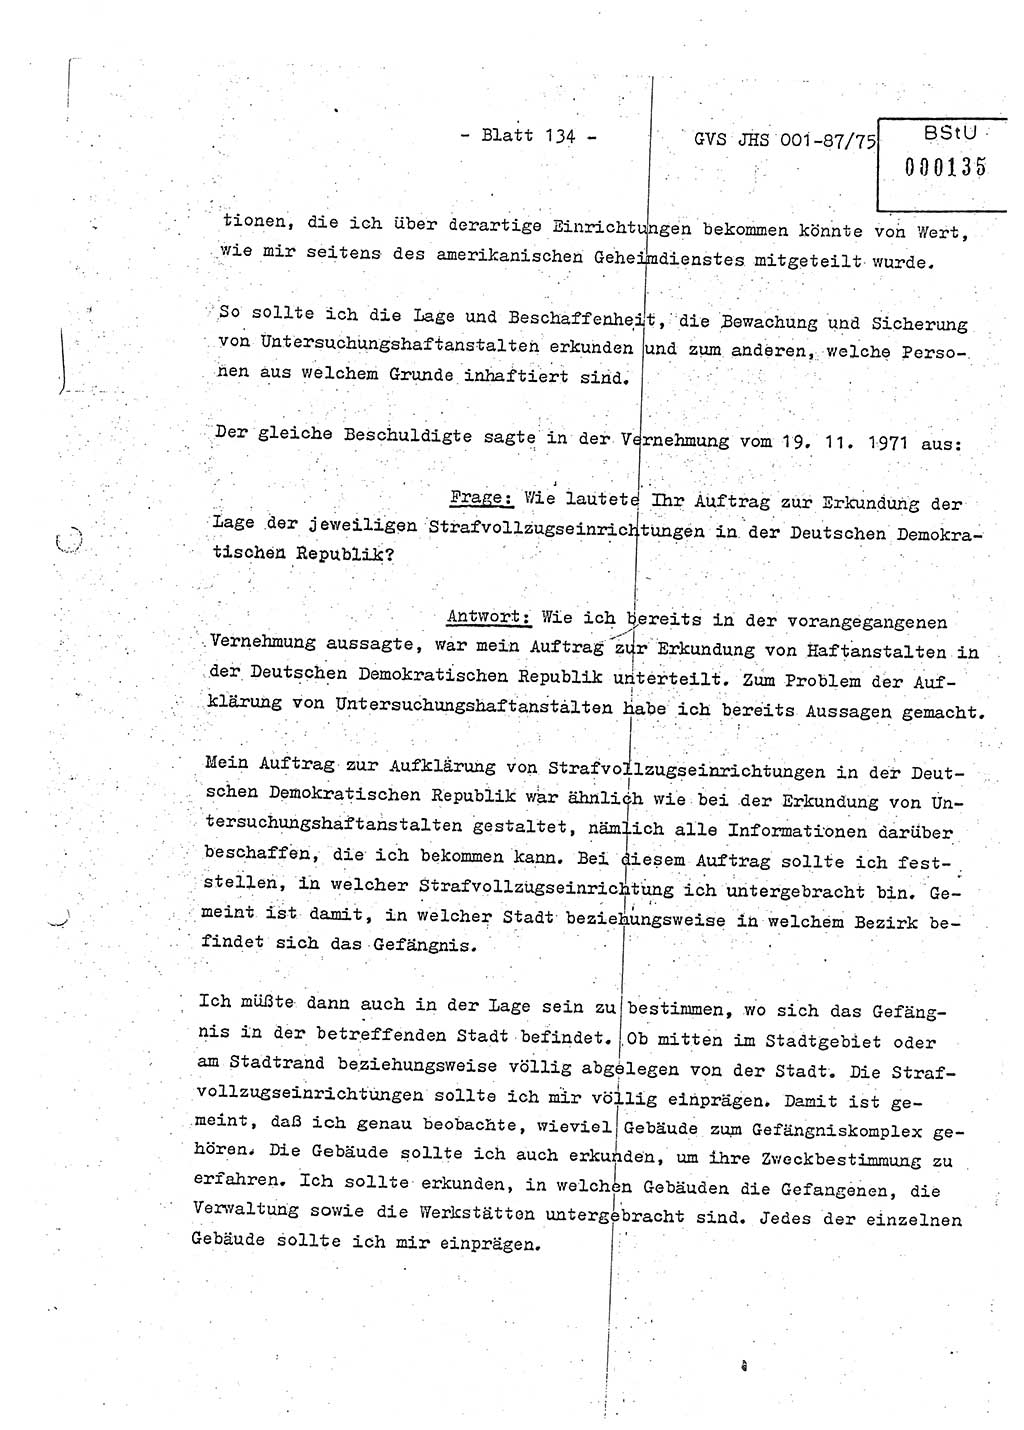 Diplomarbeit Hauptmann Volkmar Heinz (Abt. ⅩⅣ), Oberleutnant Lothar Rüdiger (BV Lpz. Abt. Ⅺ), Ministerium für Staatssicherheit (MfS) [Deutsche Demokratische Republik (DDR)], Juristische Hochschule (JHS), Geheime Verschlußsache (GVS) o001-87/75, Potsdam 1975, Seite 134 (Dipl.-Arb. MfS DDR JHS GVS o001-87/75 1975, S. 134)